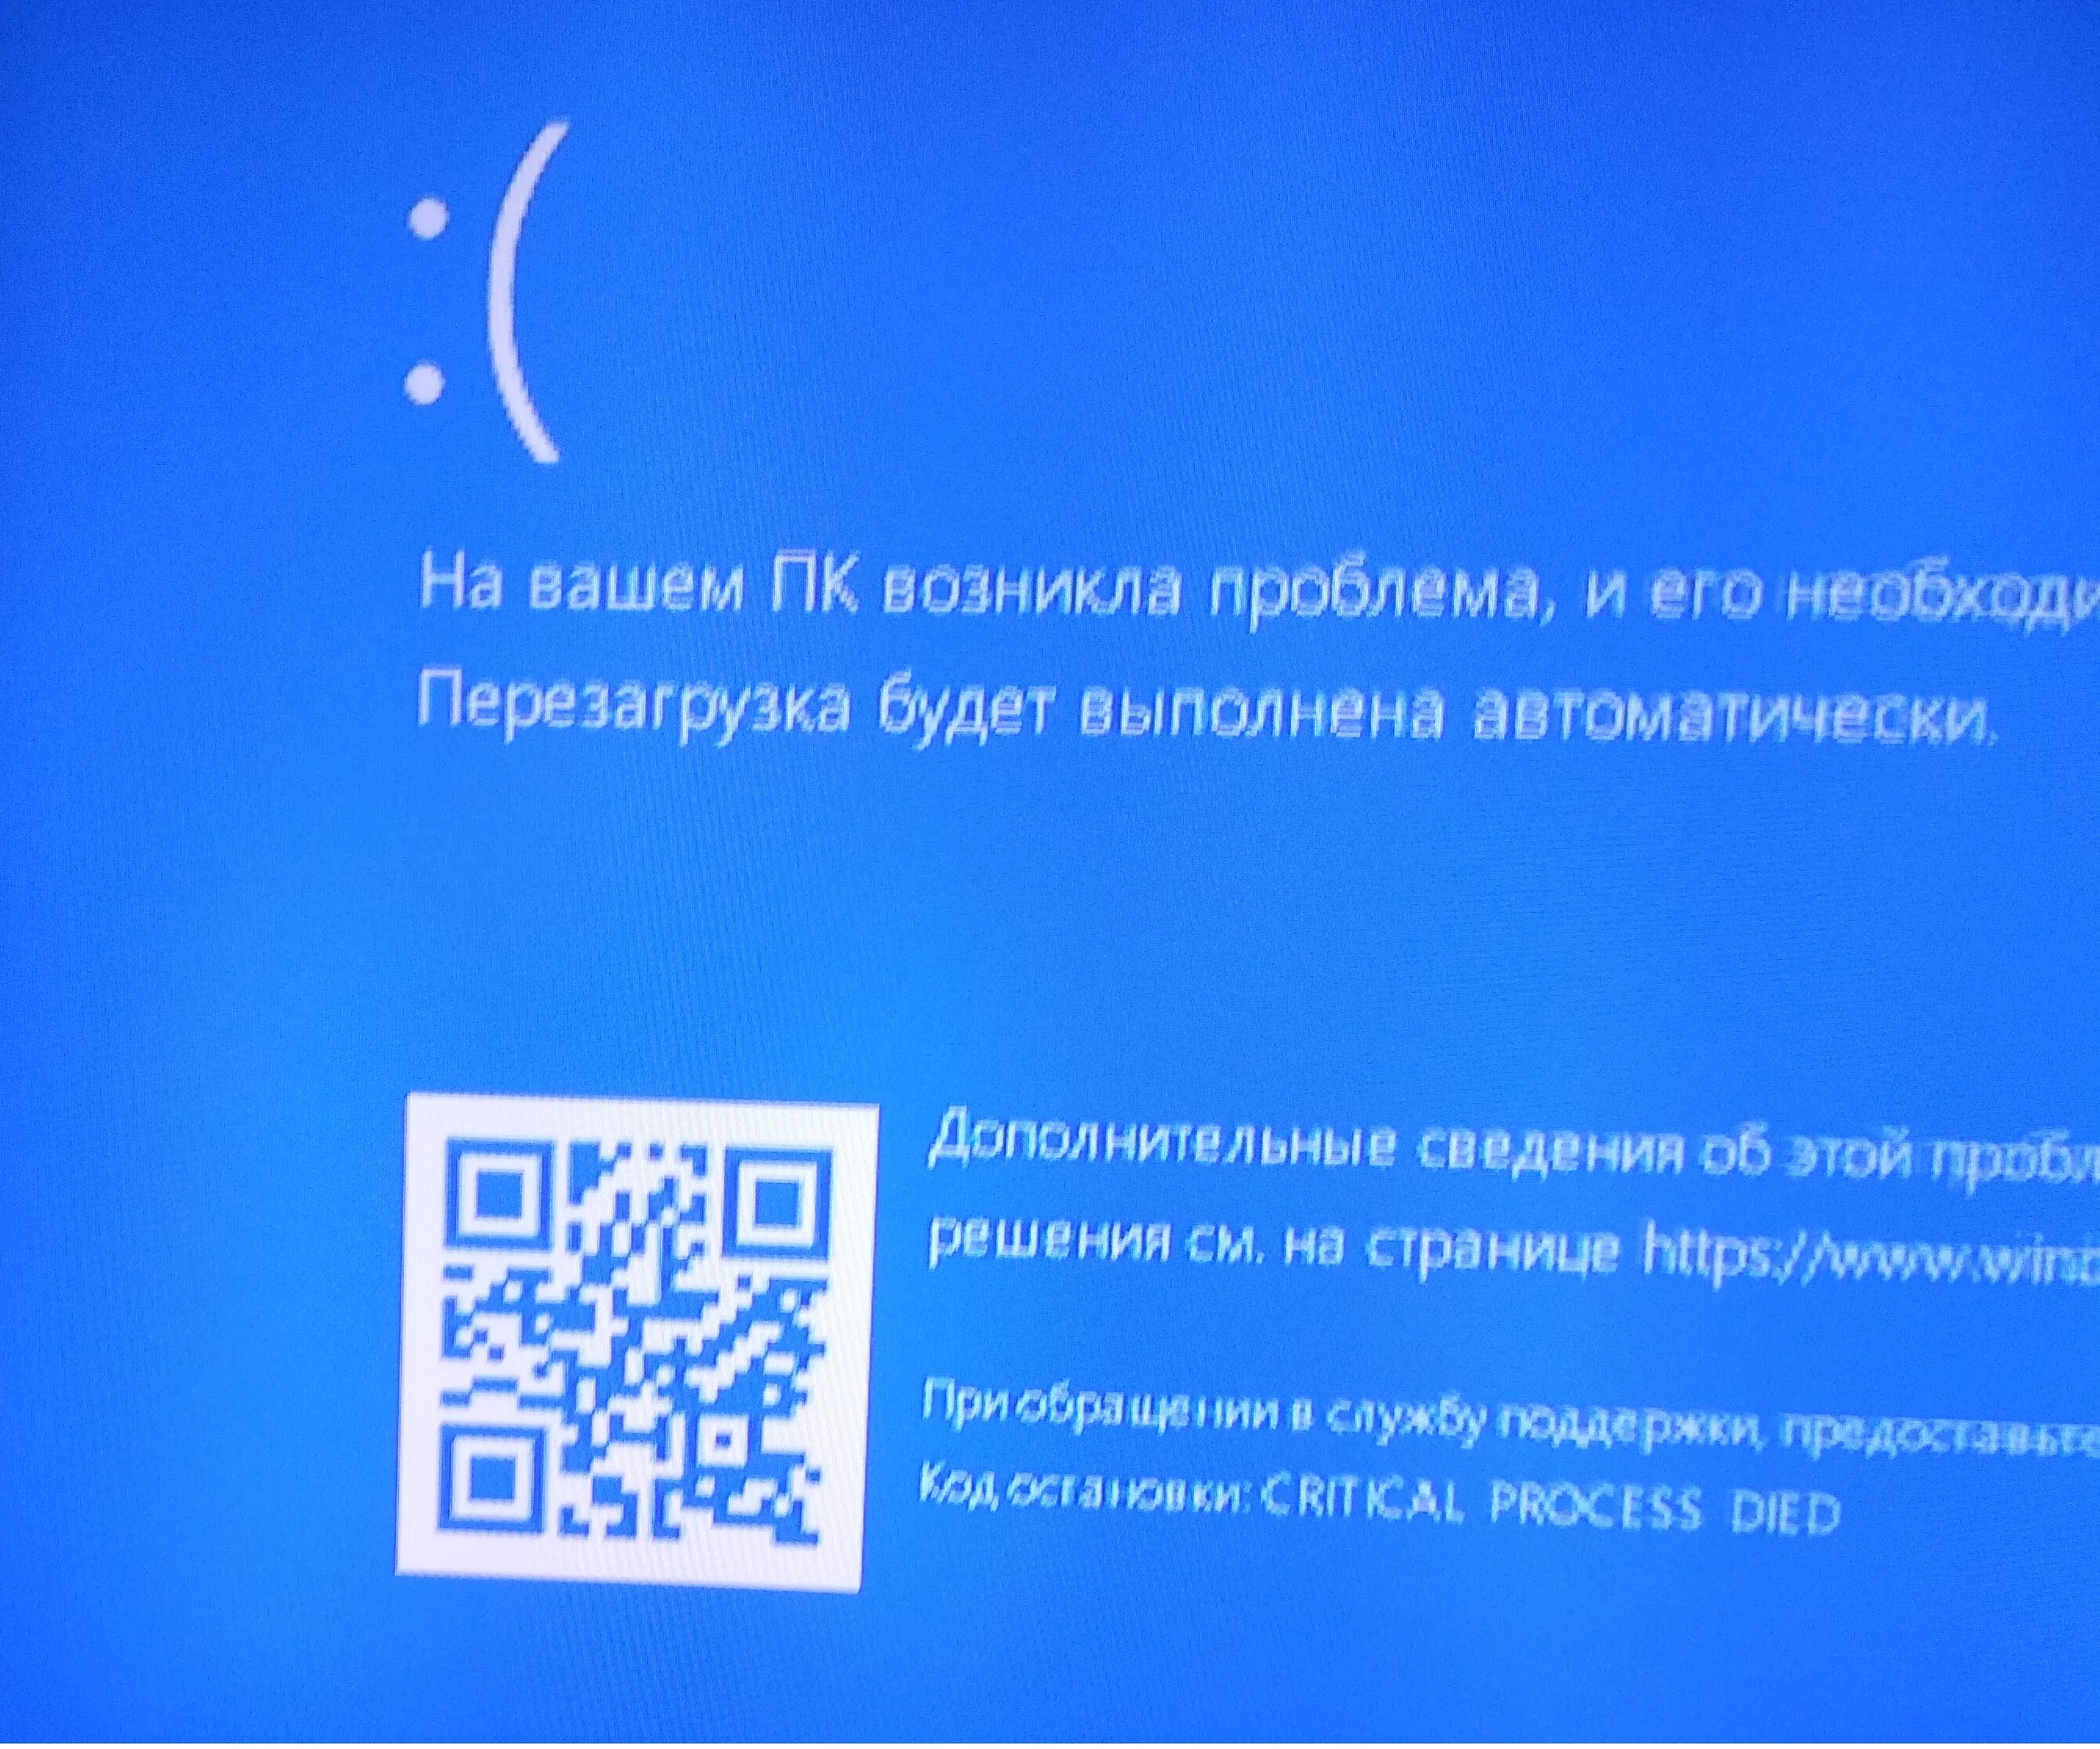 Ntoskrnl exe синий экран windows 10. Синий экран смерти Windows 10 Оперативная память. Ошибка виндовс 10 синий экран. Синий экран смерти Windows critical process died. Синий экран выключения Windows.